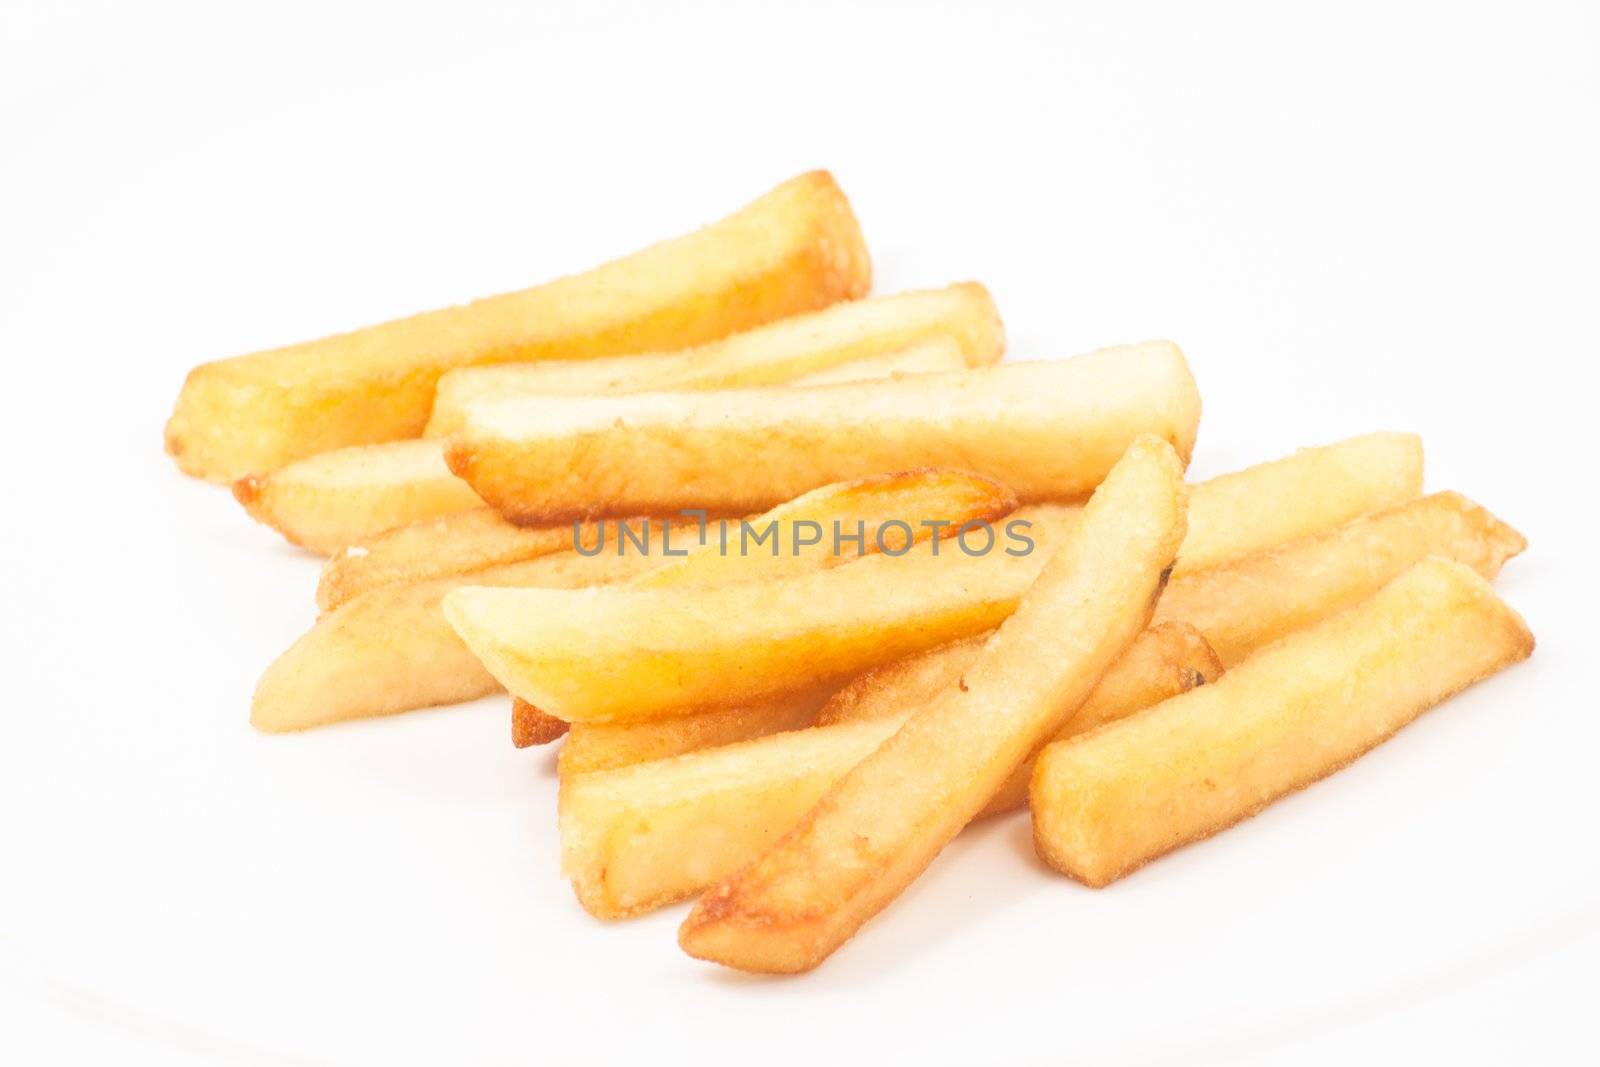 Potato, french fries on white background